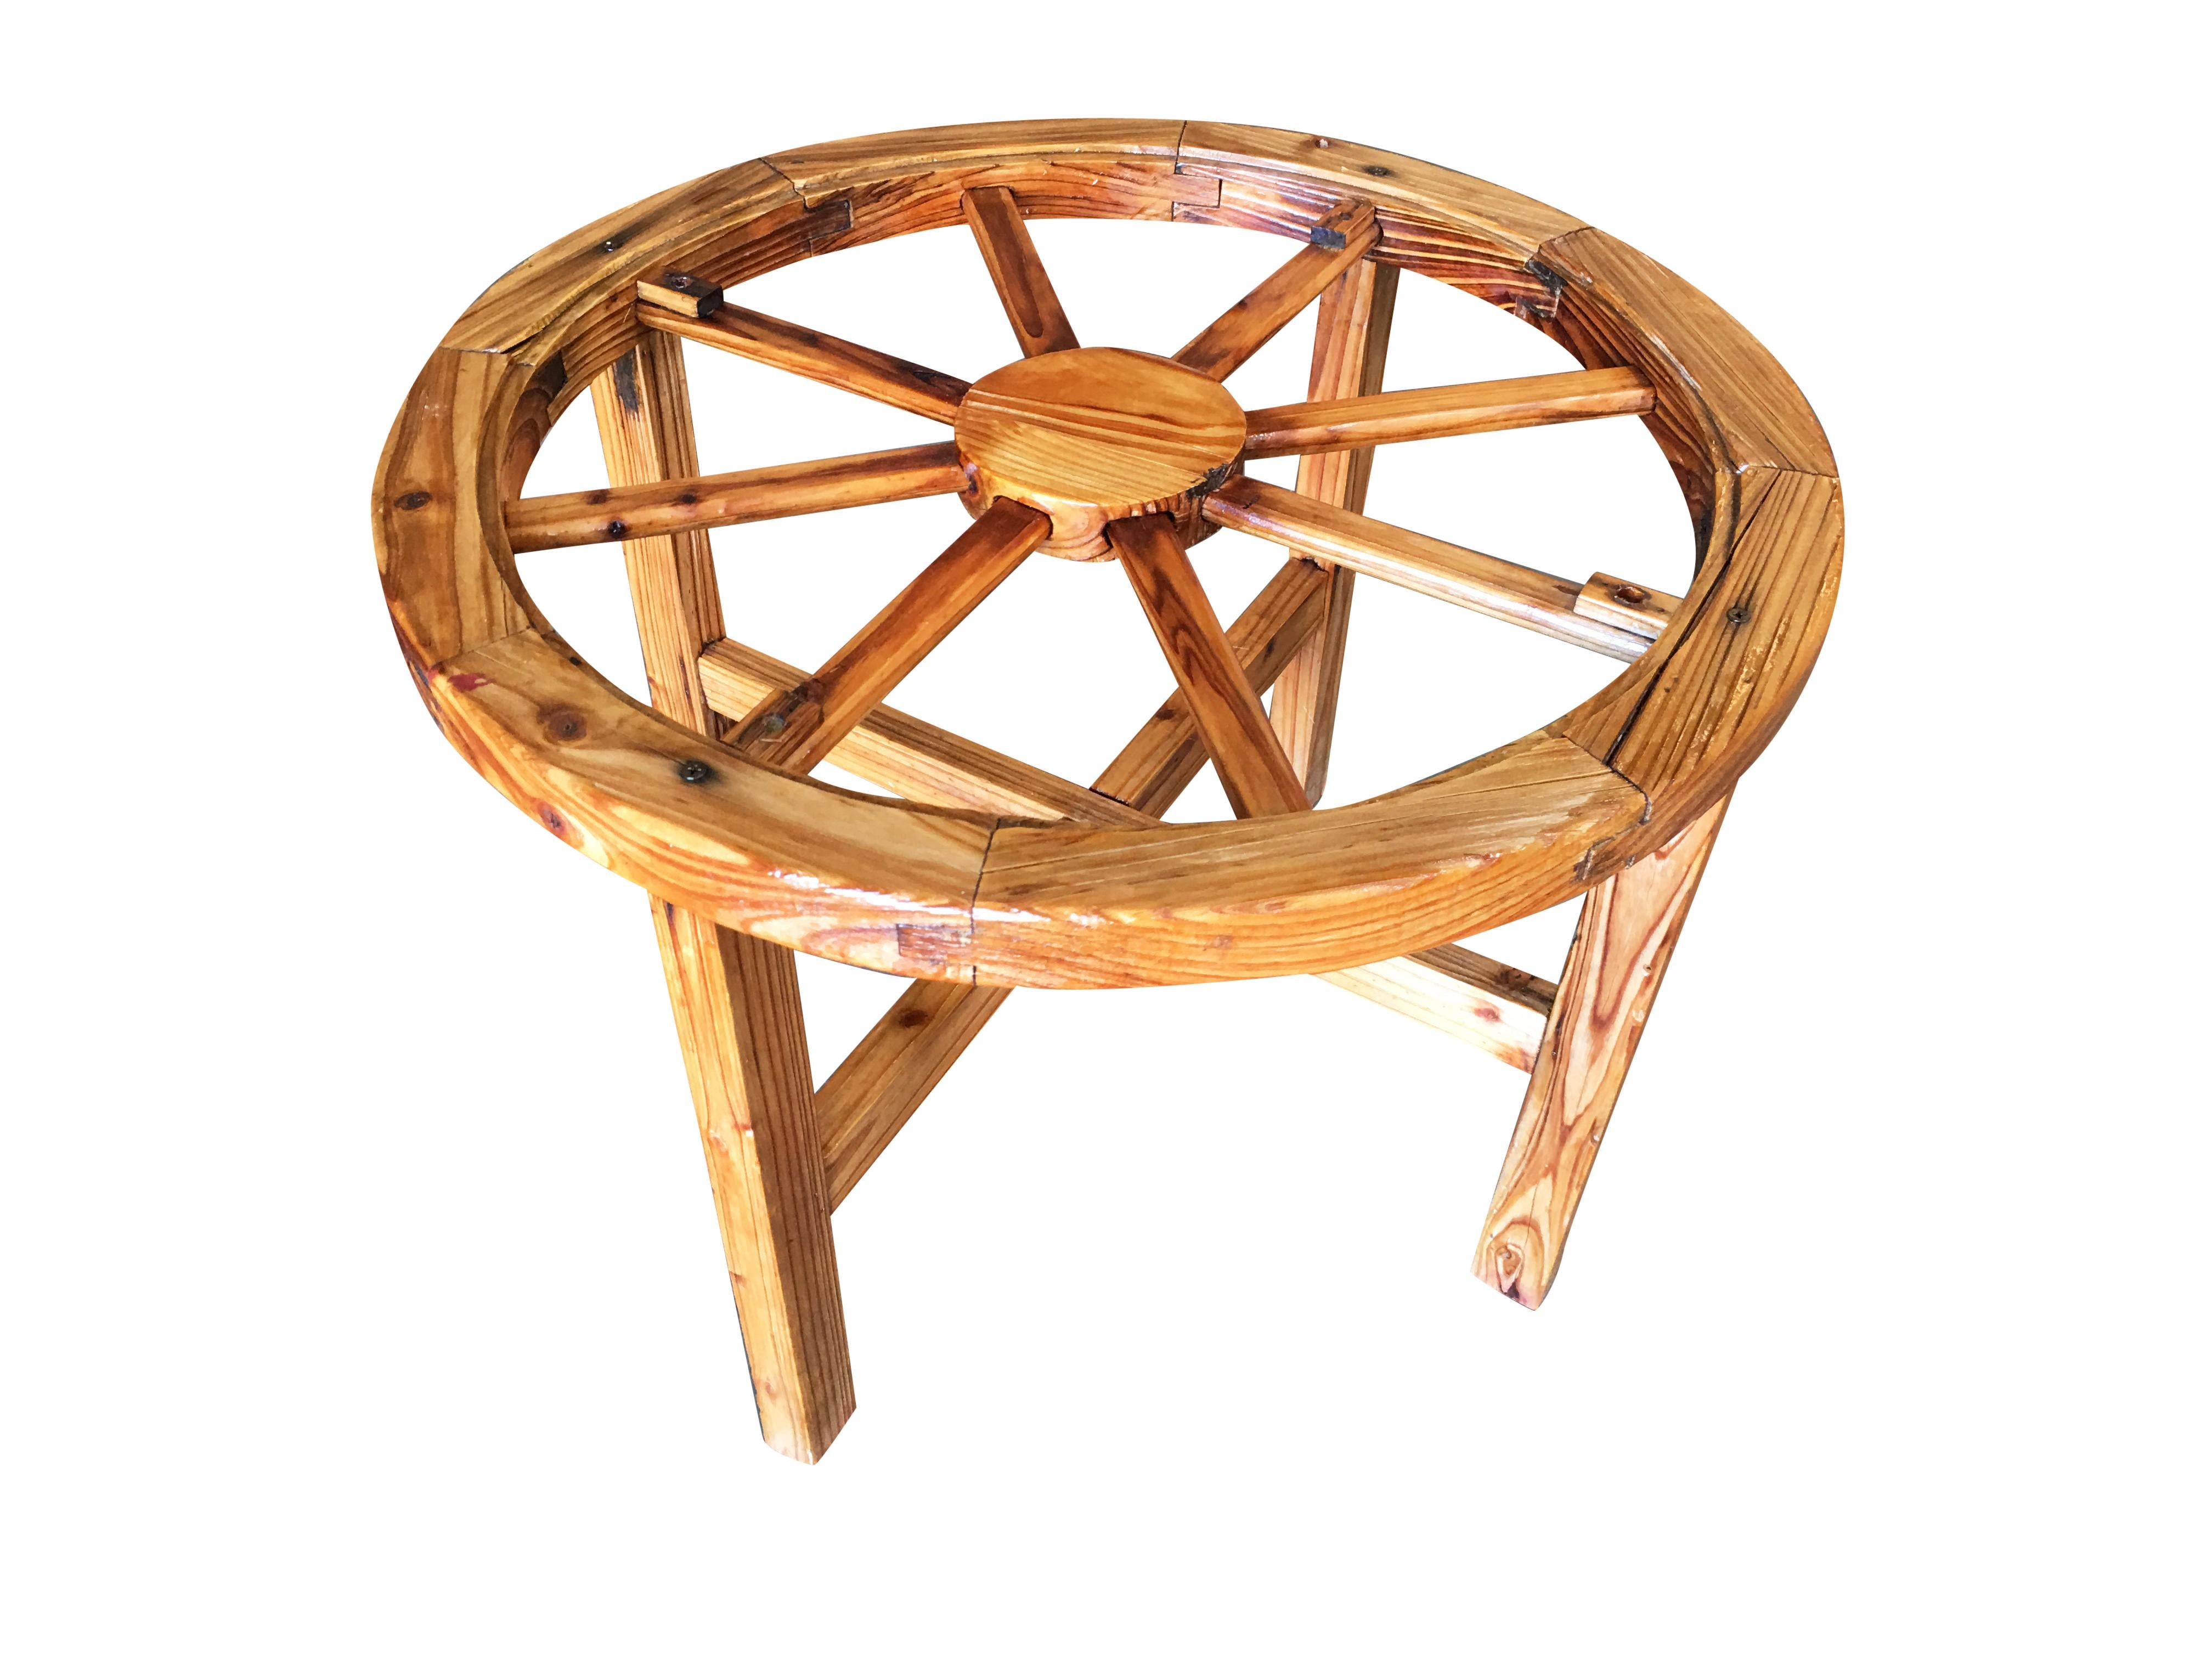 Antike Wagenrad-Sessel mit passendem Beistelltisch. Schweres Massivholz aus einem antiken Holz, das irgendwann in den 1960er Jahren hergestellt wurde. Die Stühle und der Tisch haben einen sehr robusten Look und sind sehr gepflegt.

Stuhl misst: 34